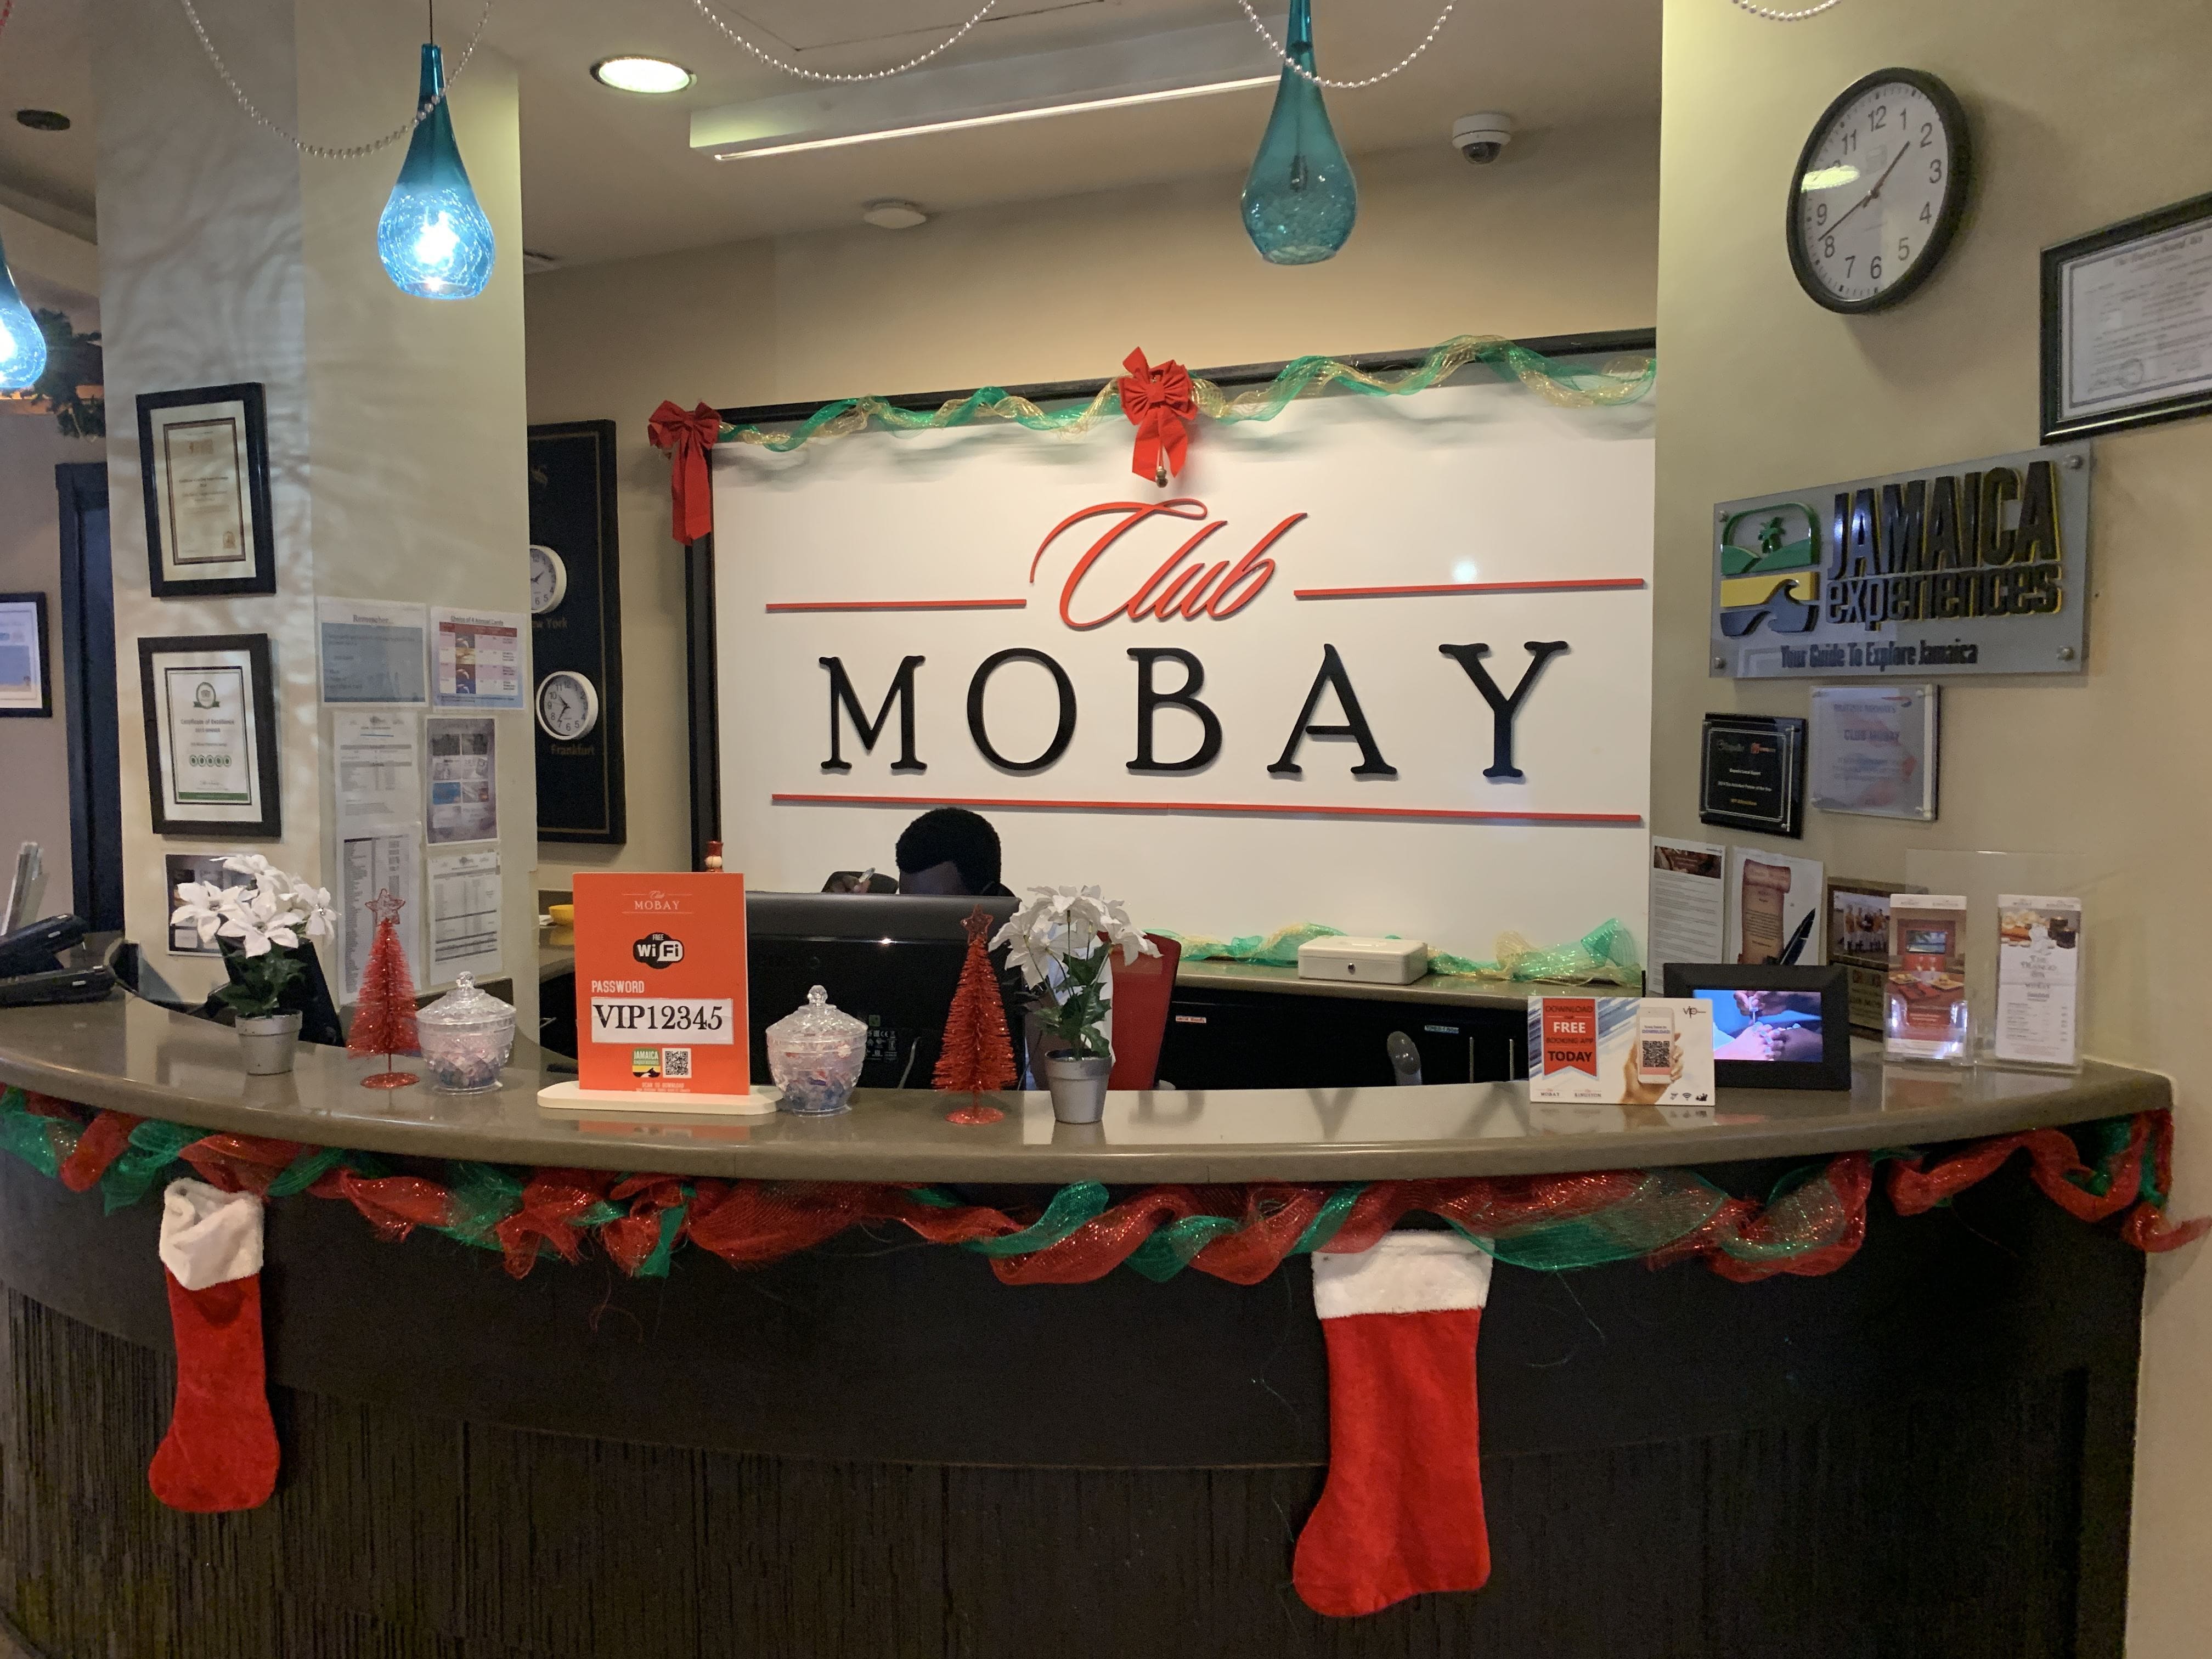 Club Mobay Reception